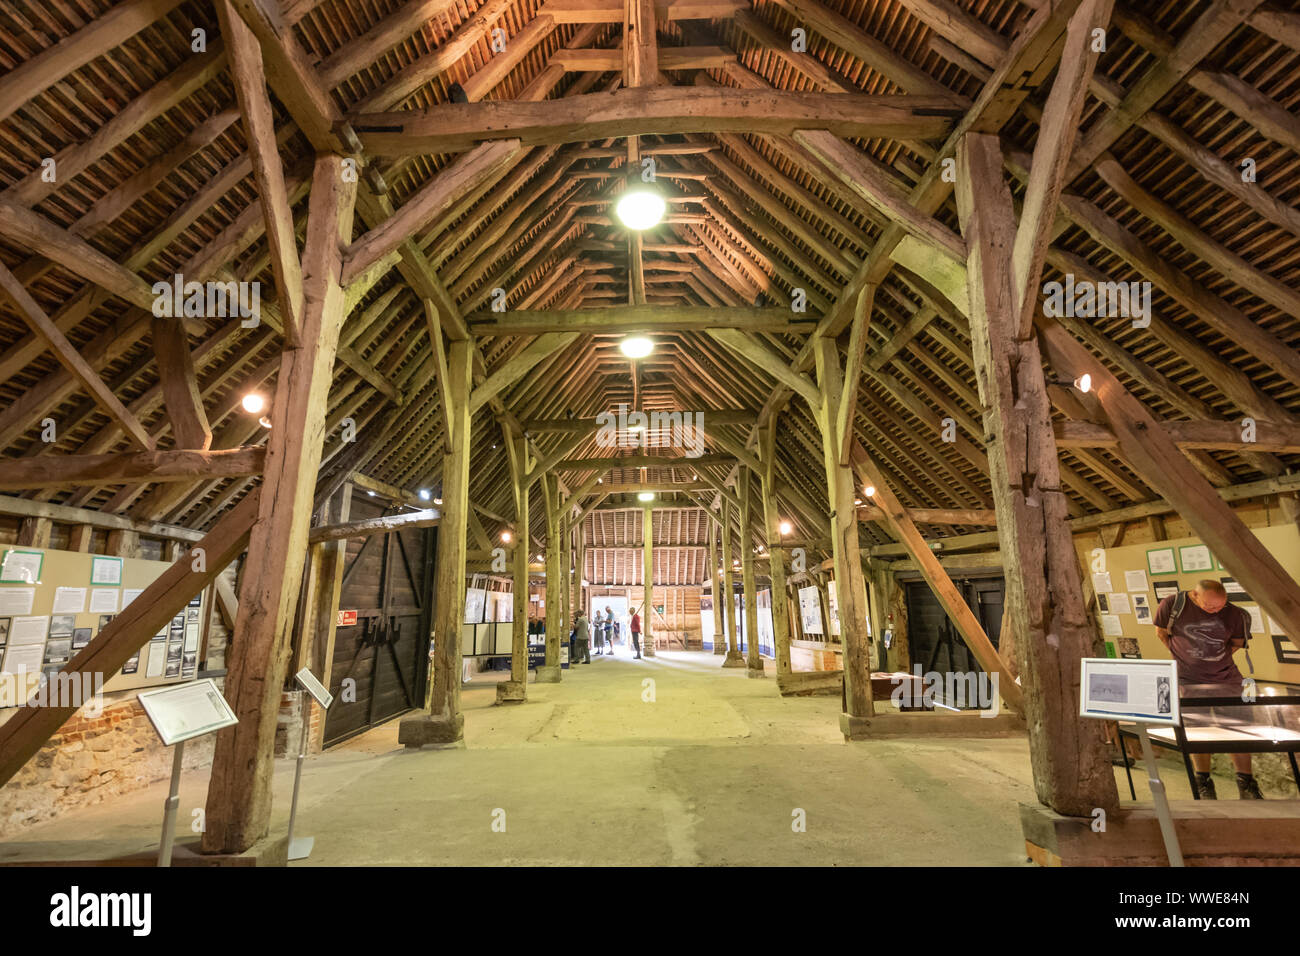 Innenraum des historischen großen Scheune Wanborough, dem ältesten Gebäude aus Holz in Surrey, UK, durch die Zisterzienser Mönche im Jahre 1388 gebaut. Stockfoto